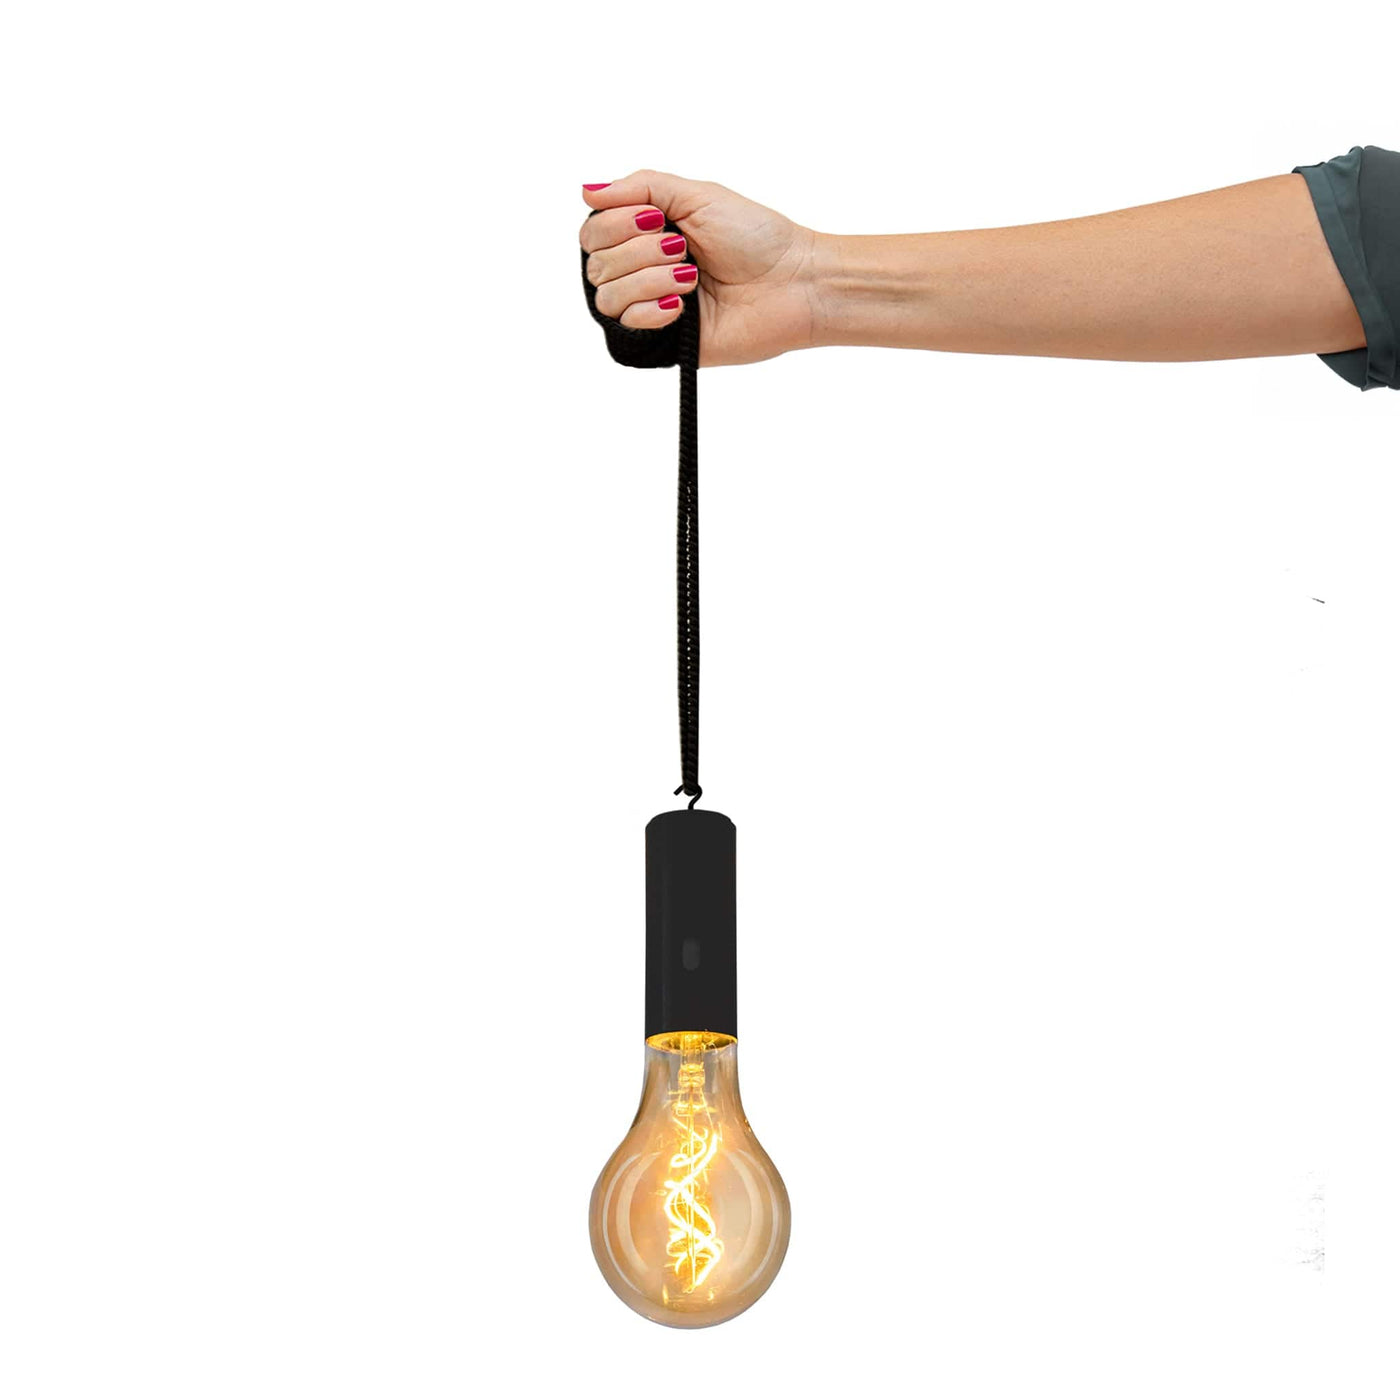 Éclairez avec Edy 100 de Newgarden : ampoule portable aimantée, LED brillante, design verre fumé, télécommande pour une gestion facile de l'éclairage.